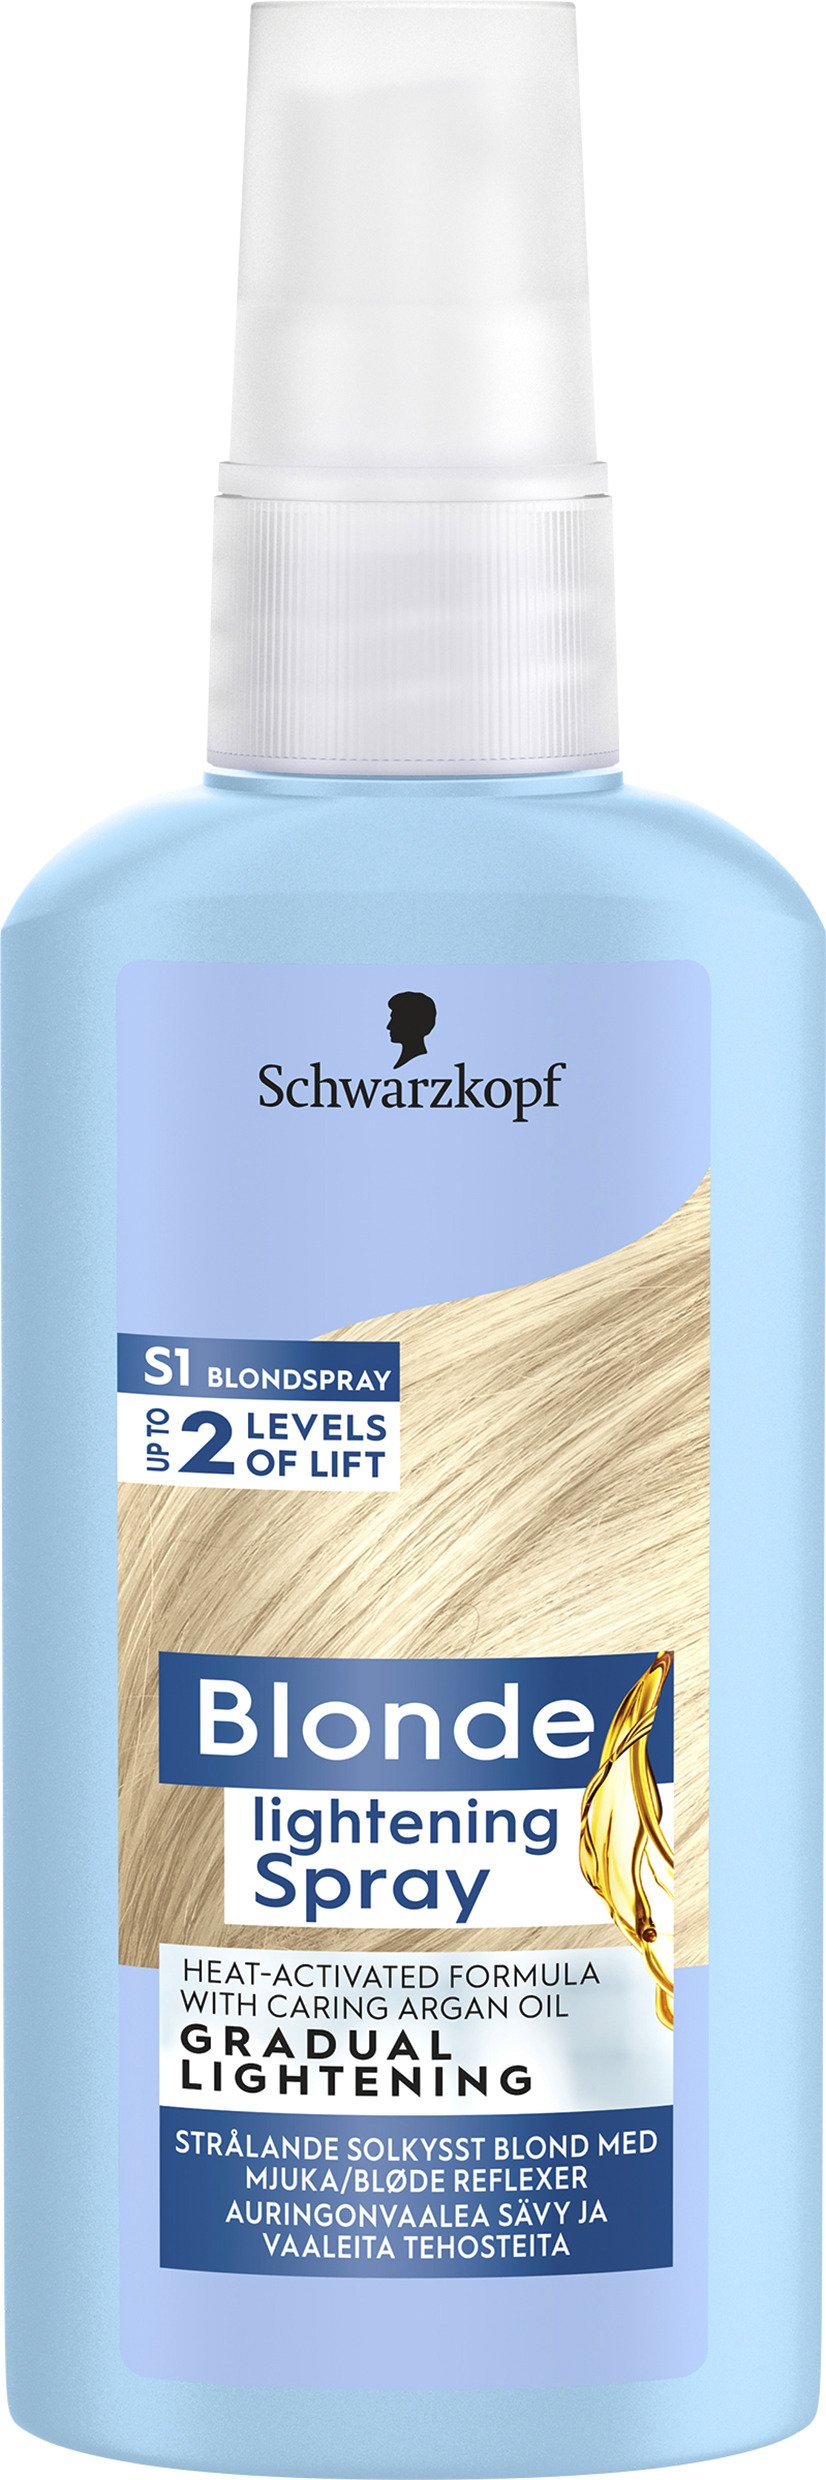 Schwarzkopf S1 Blonde Lightening Spray 125 ml